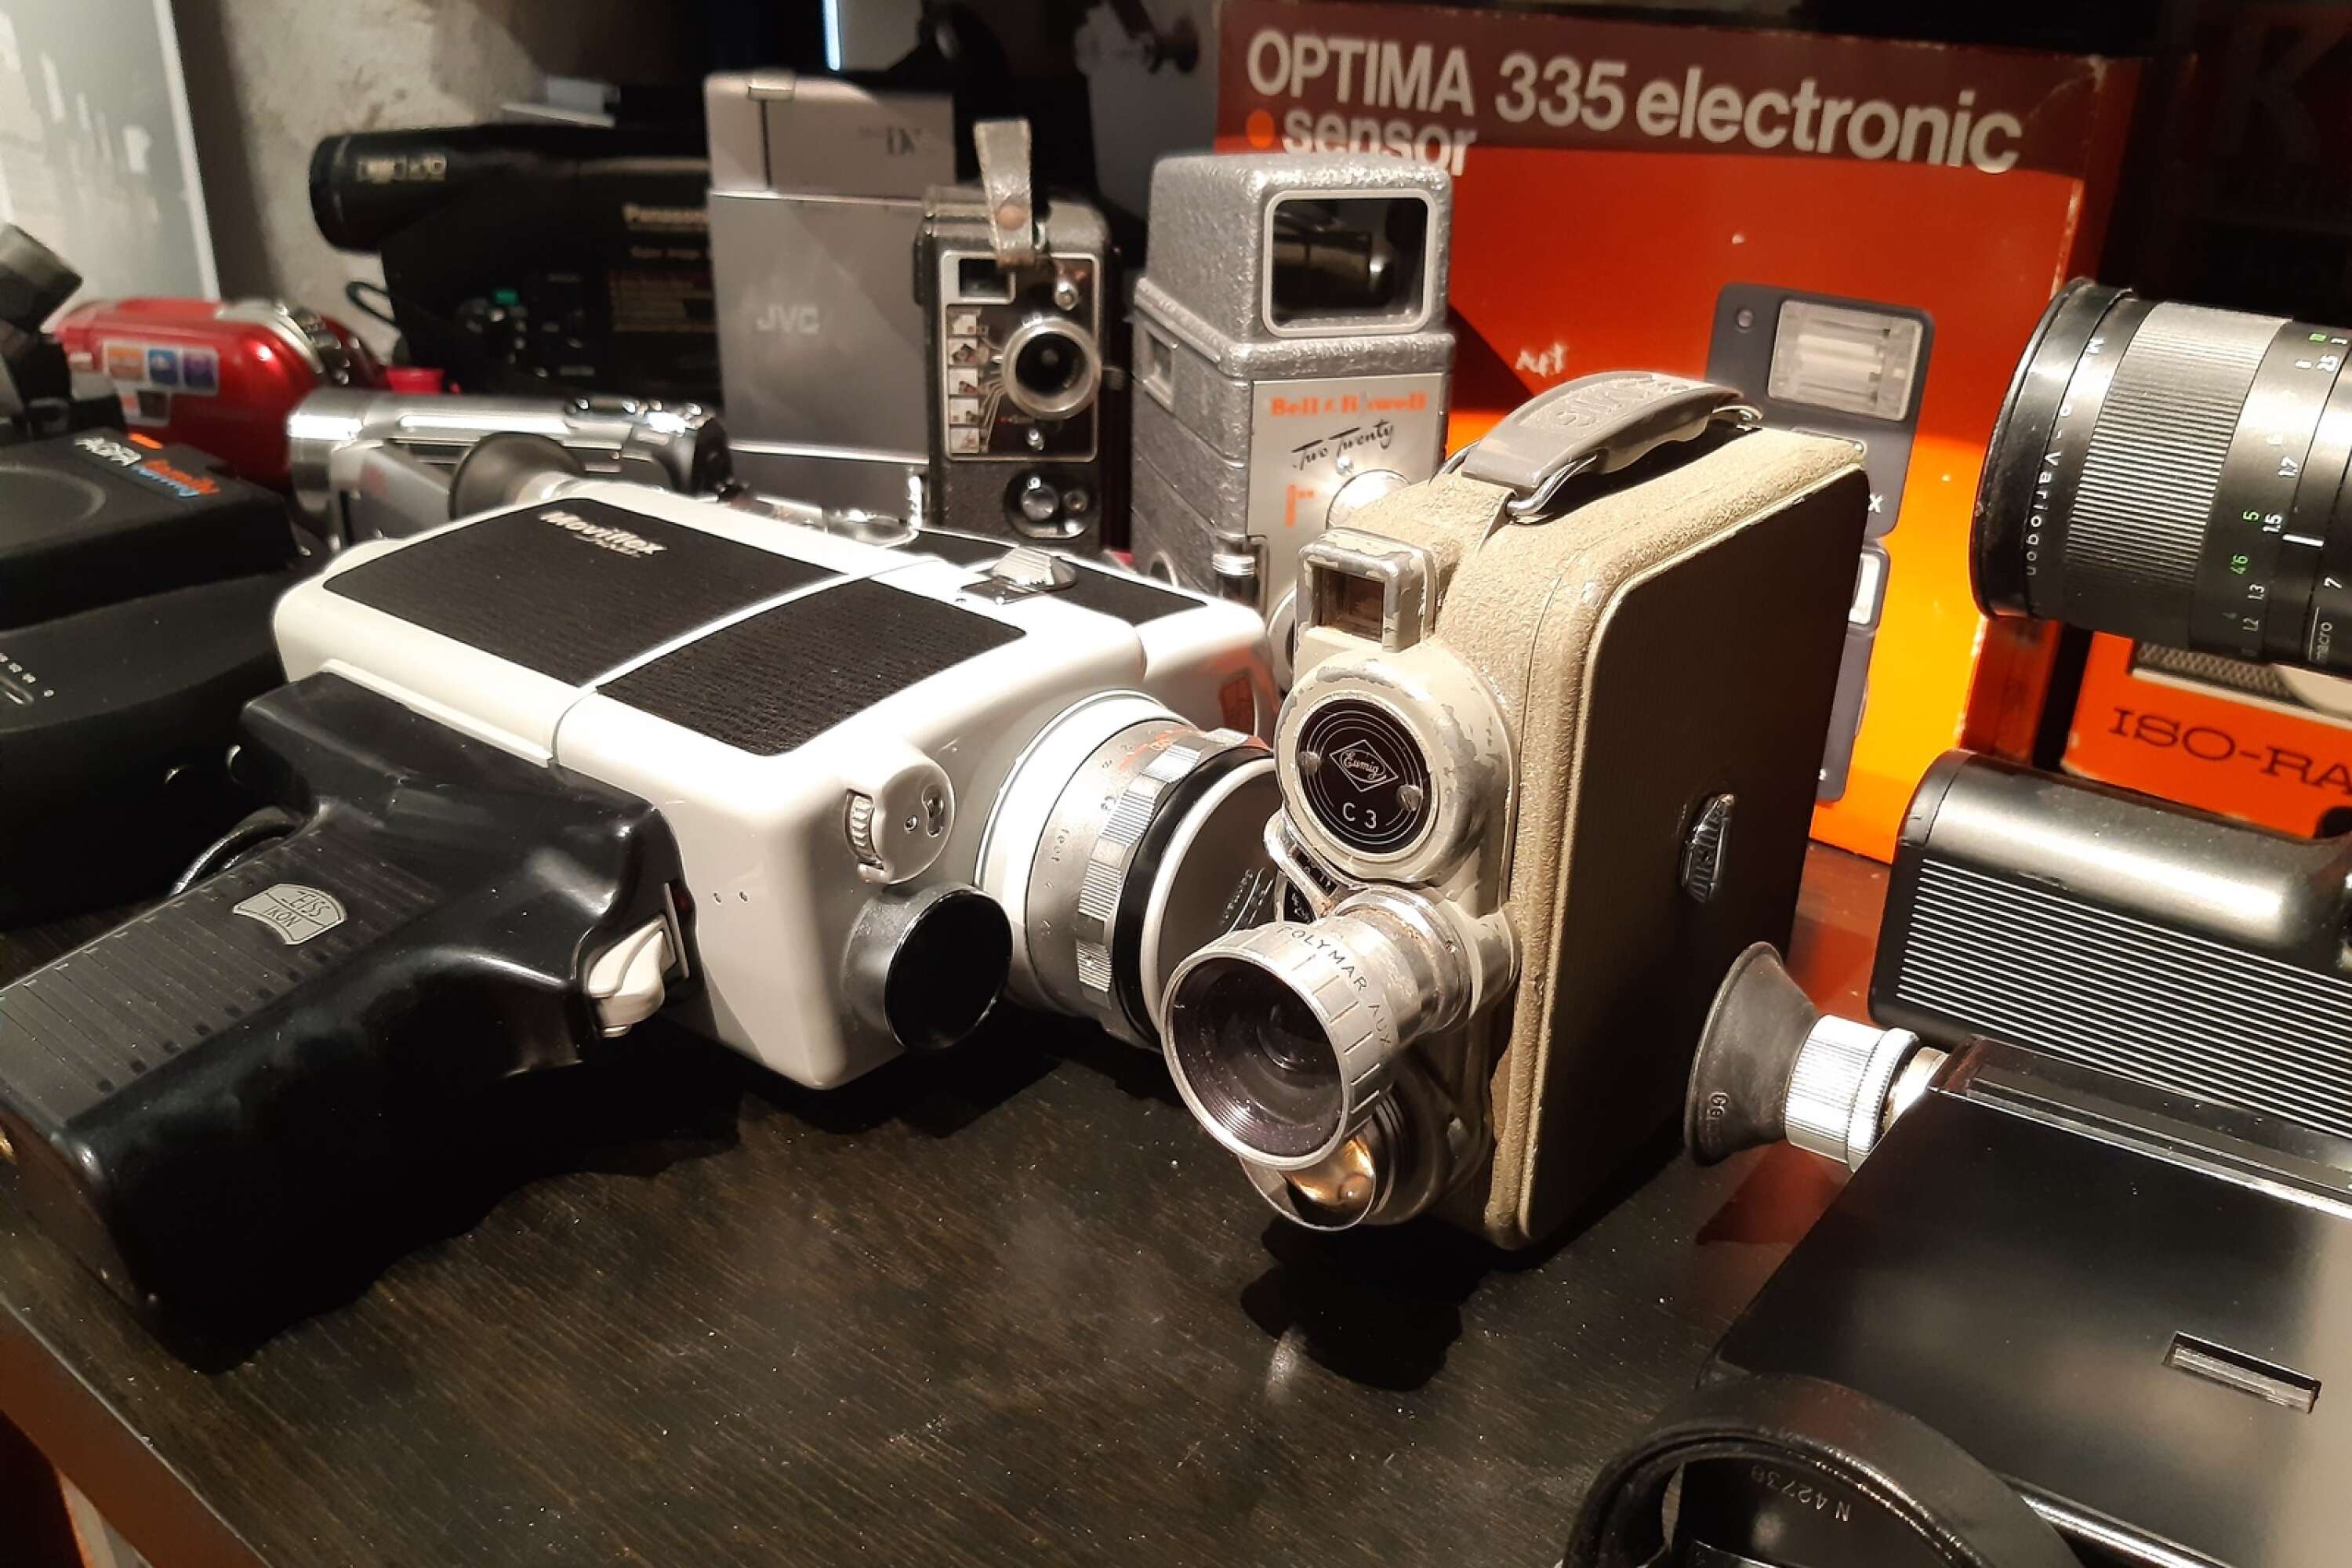 Det finns även gamla filmkameror i samlingen

